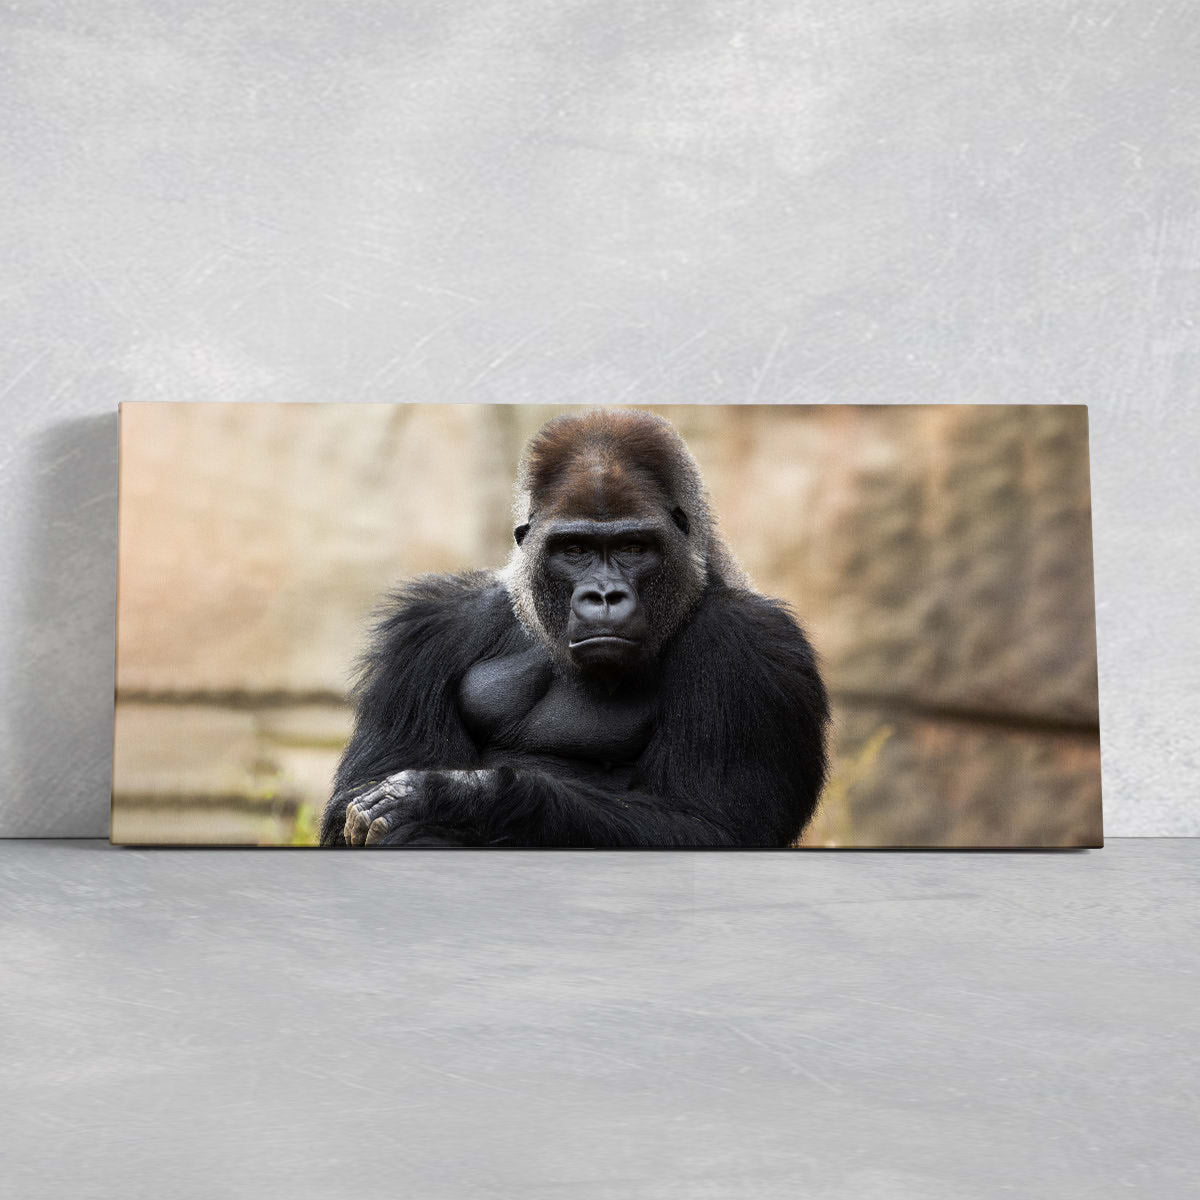 https://www.stunningcanvasprints.com/cdn/shop/products/Closeup-portrait-of-a-gorilla-ln_e5a7c2e1-25c7-4924-bae4-6701204f9522_1200x.jpg?v=1674153014